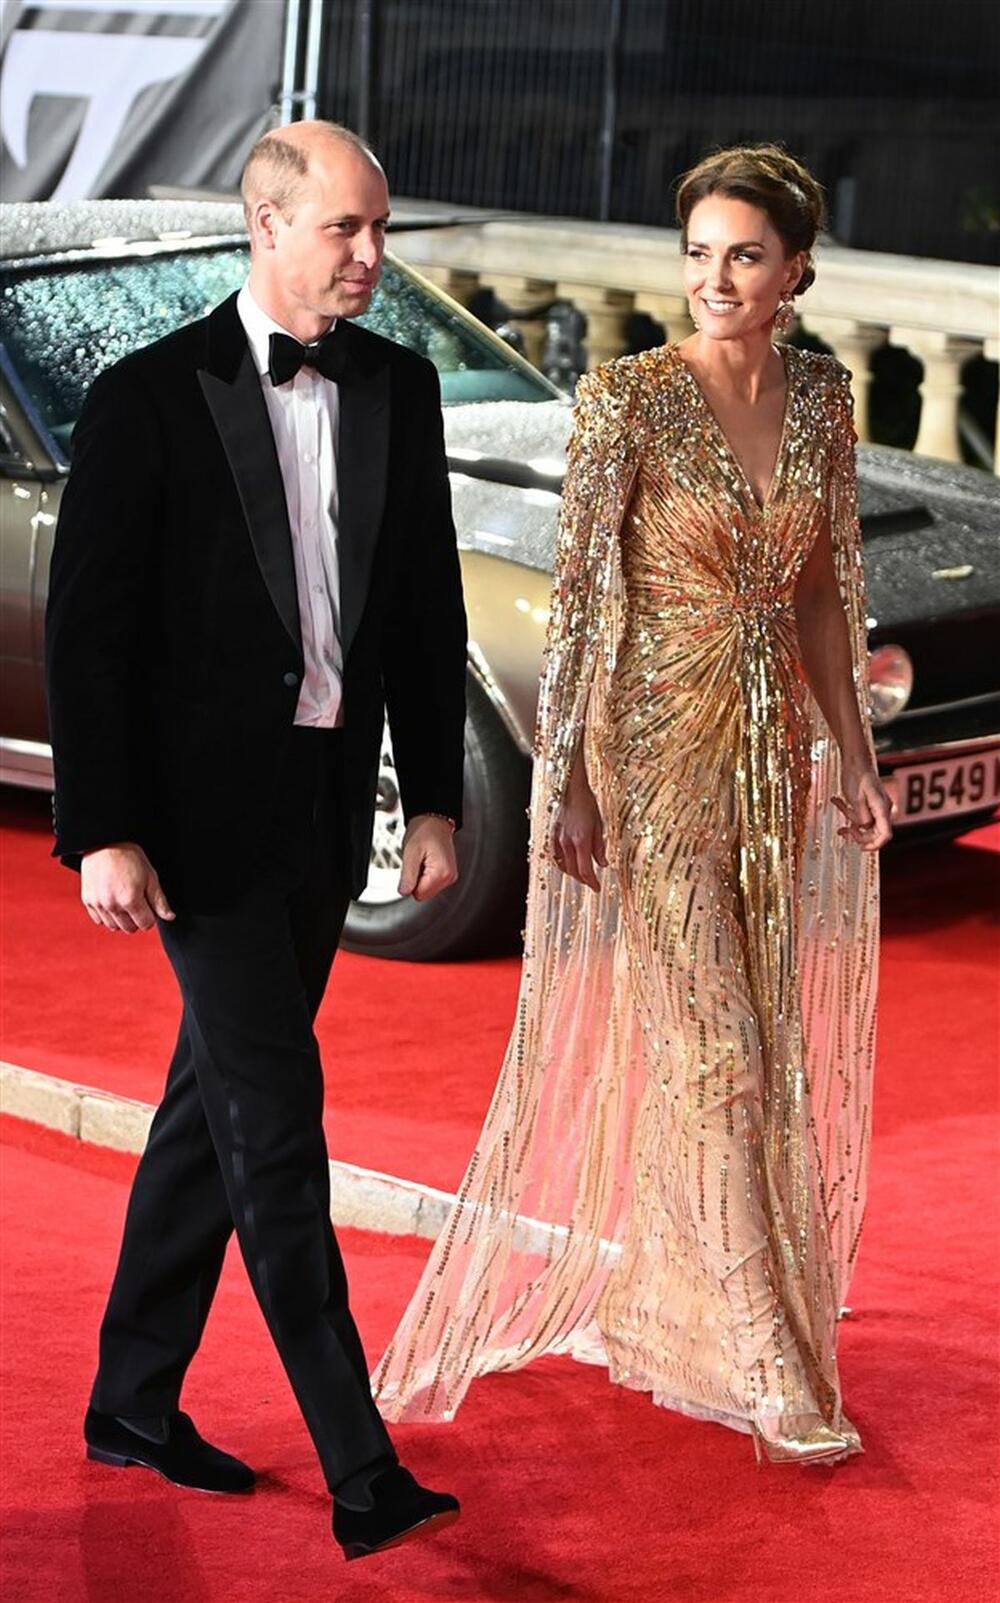 Princ Vilijam i Kejt Midlton venčali su se 2011.